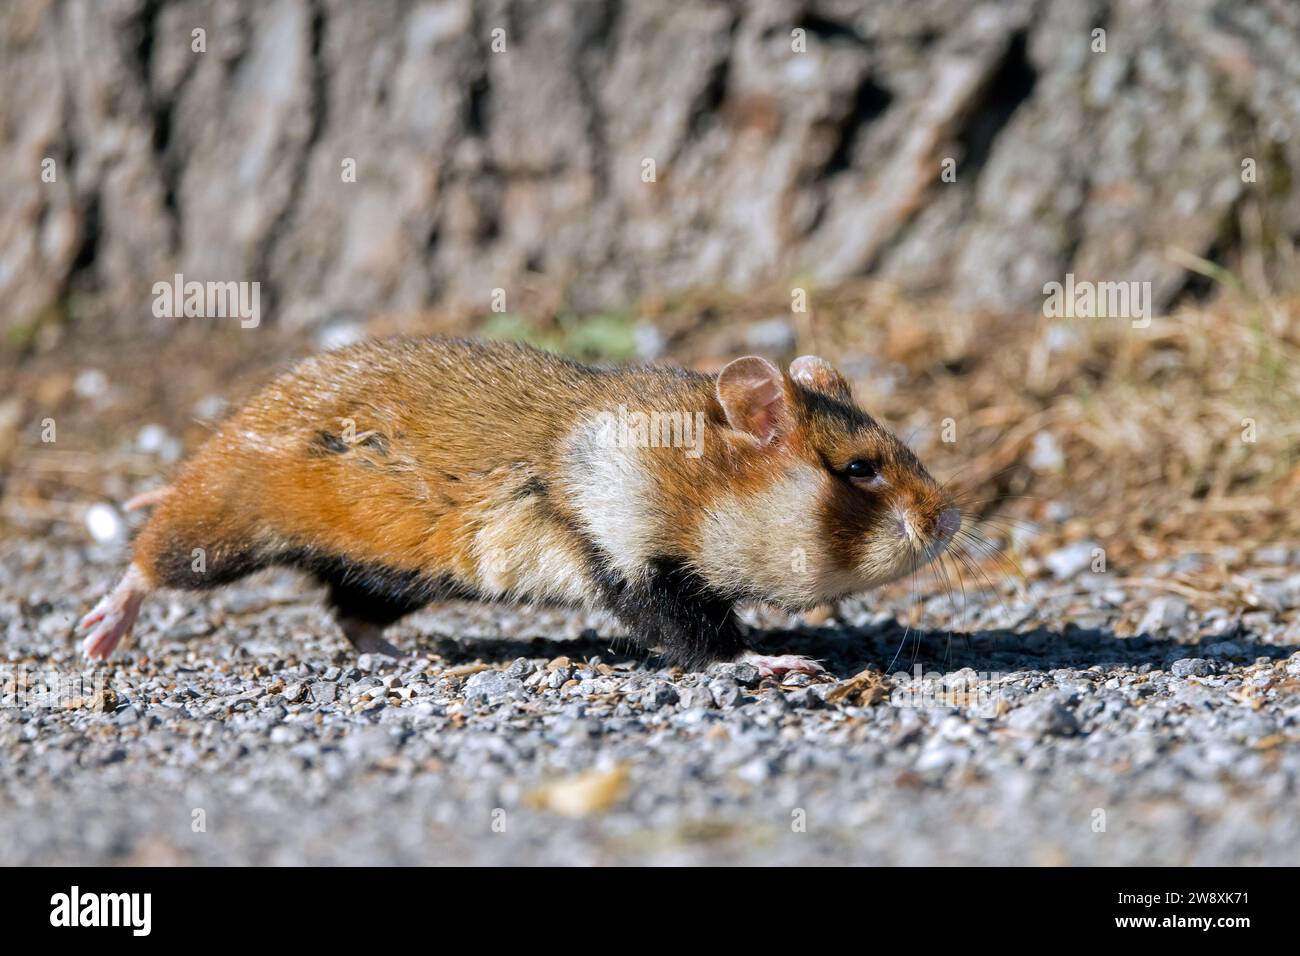 Hamster européen / hamster eurasien / hamster à ventre noir / hamster commun (Cricetus cricetus) passant devant un arbre Banque D'Images